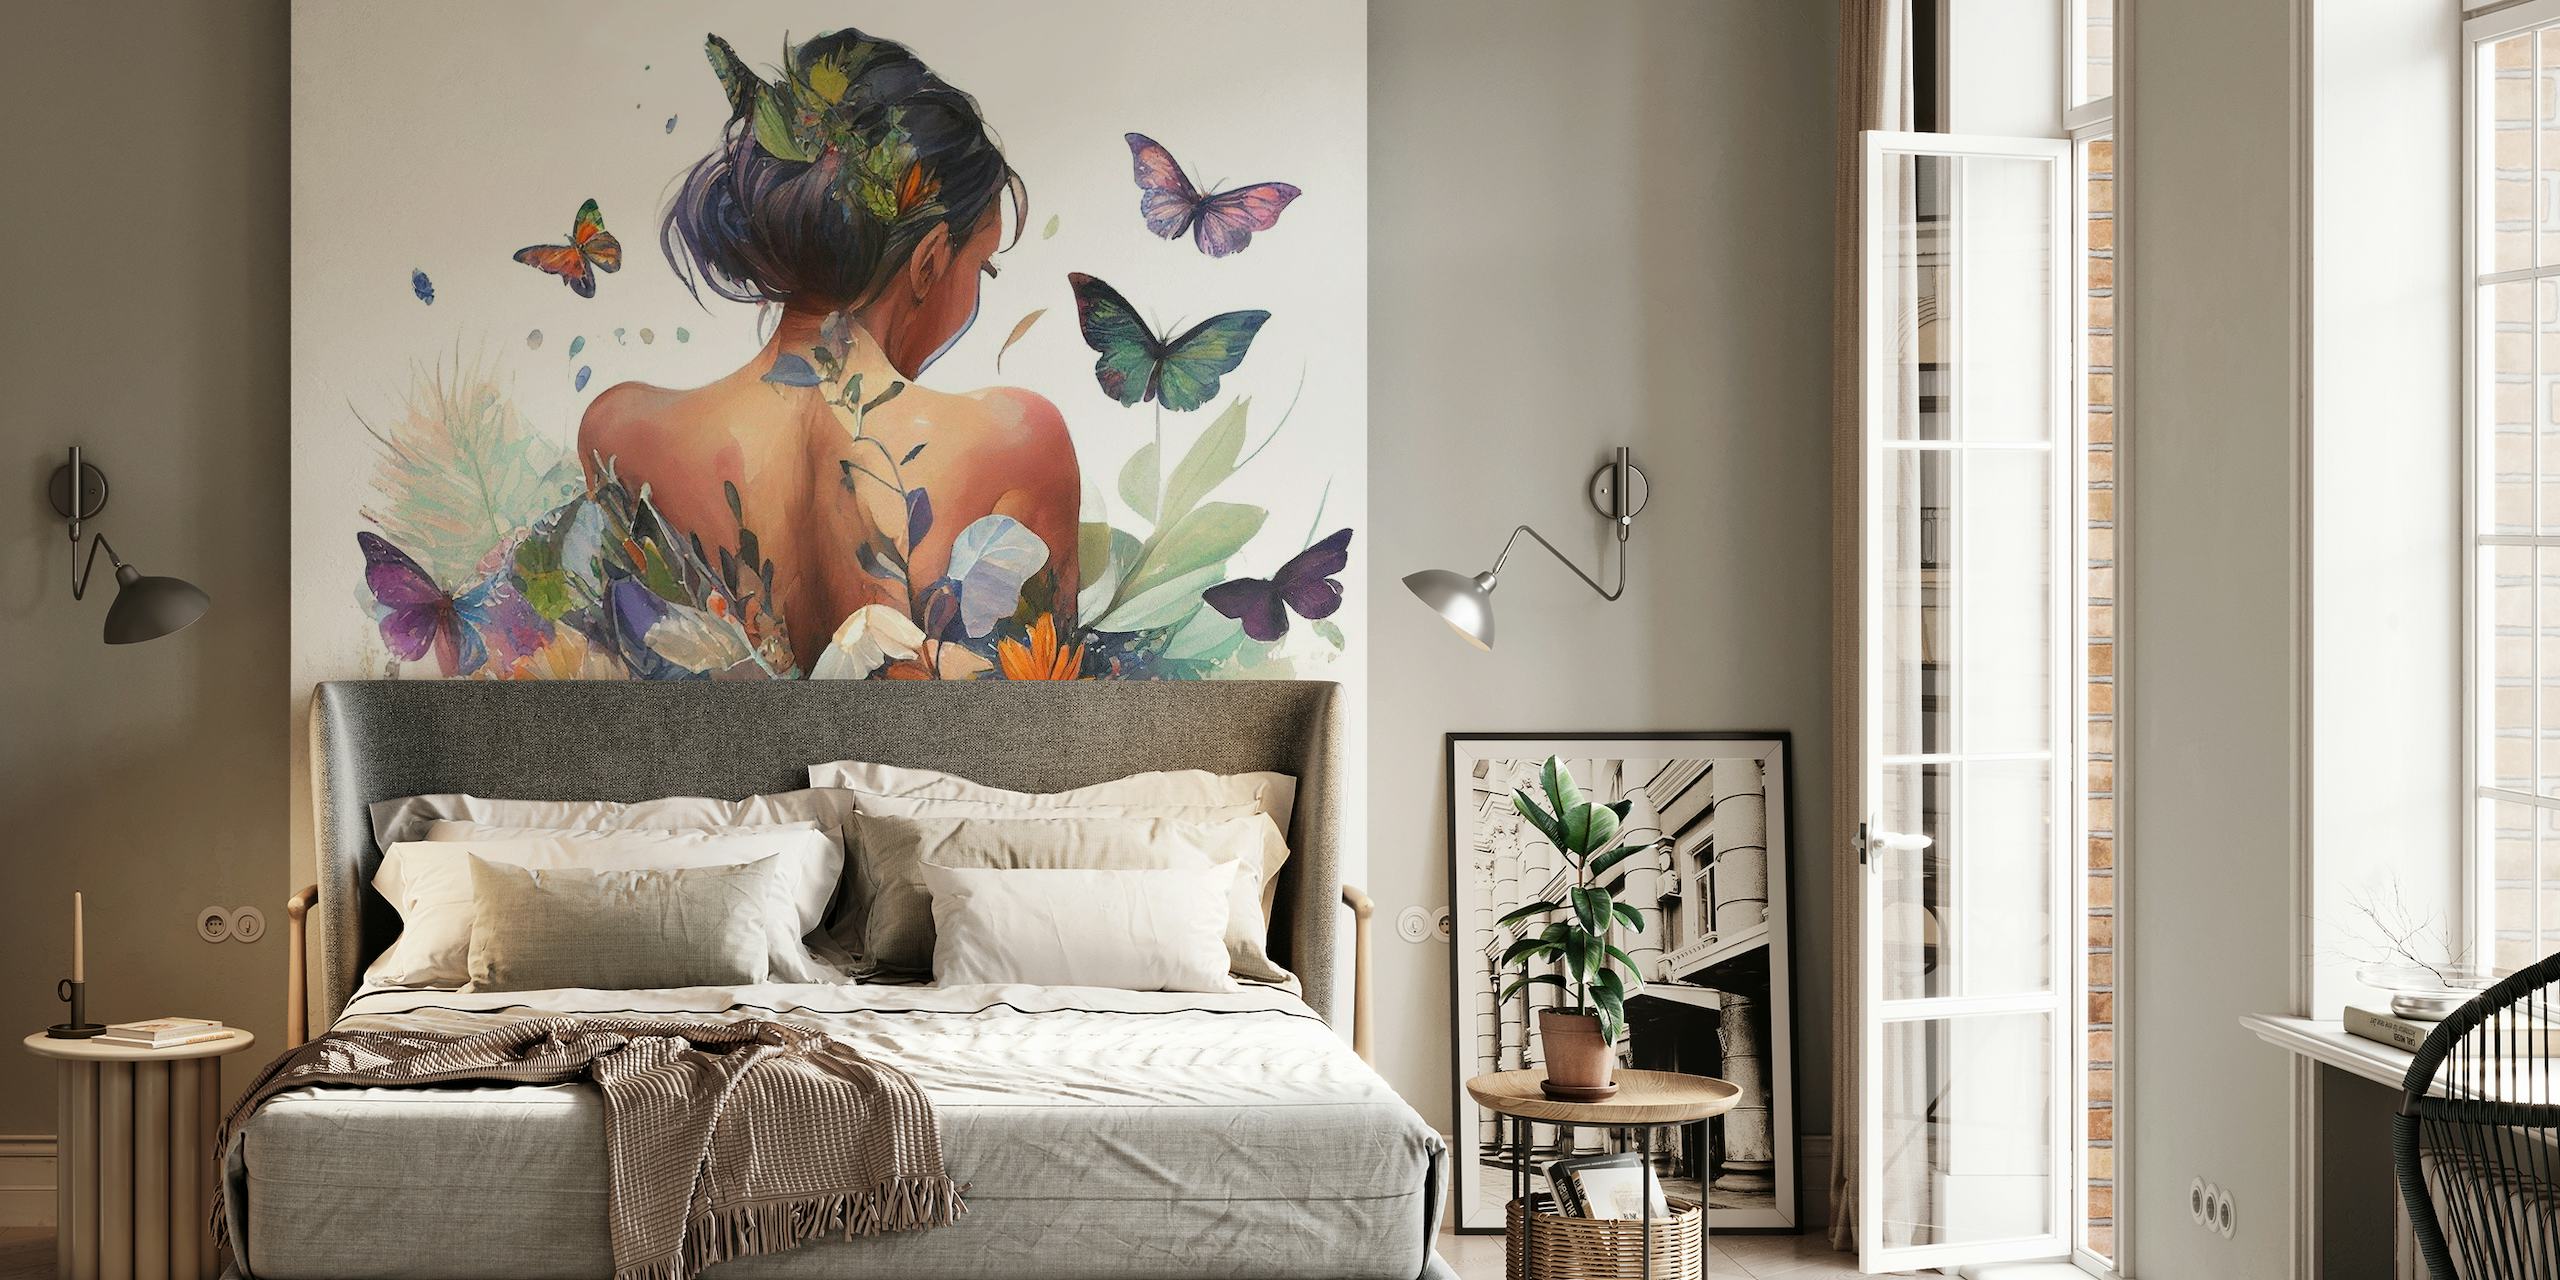 Watercolor Butterfly Woman Body #3 wallpaper